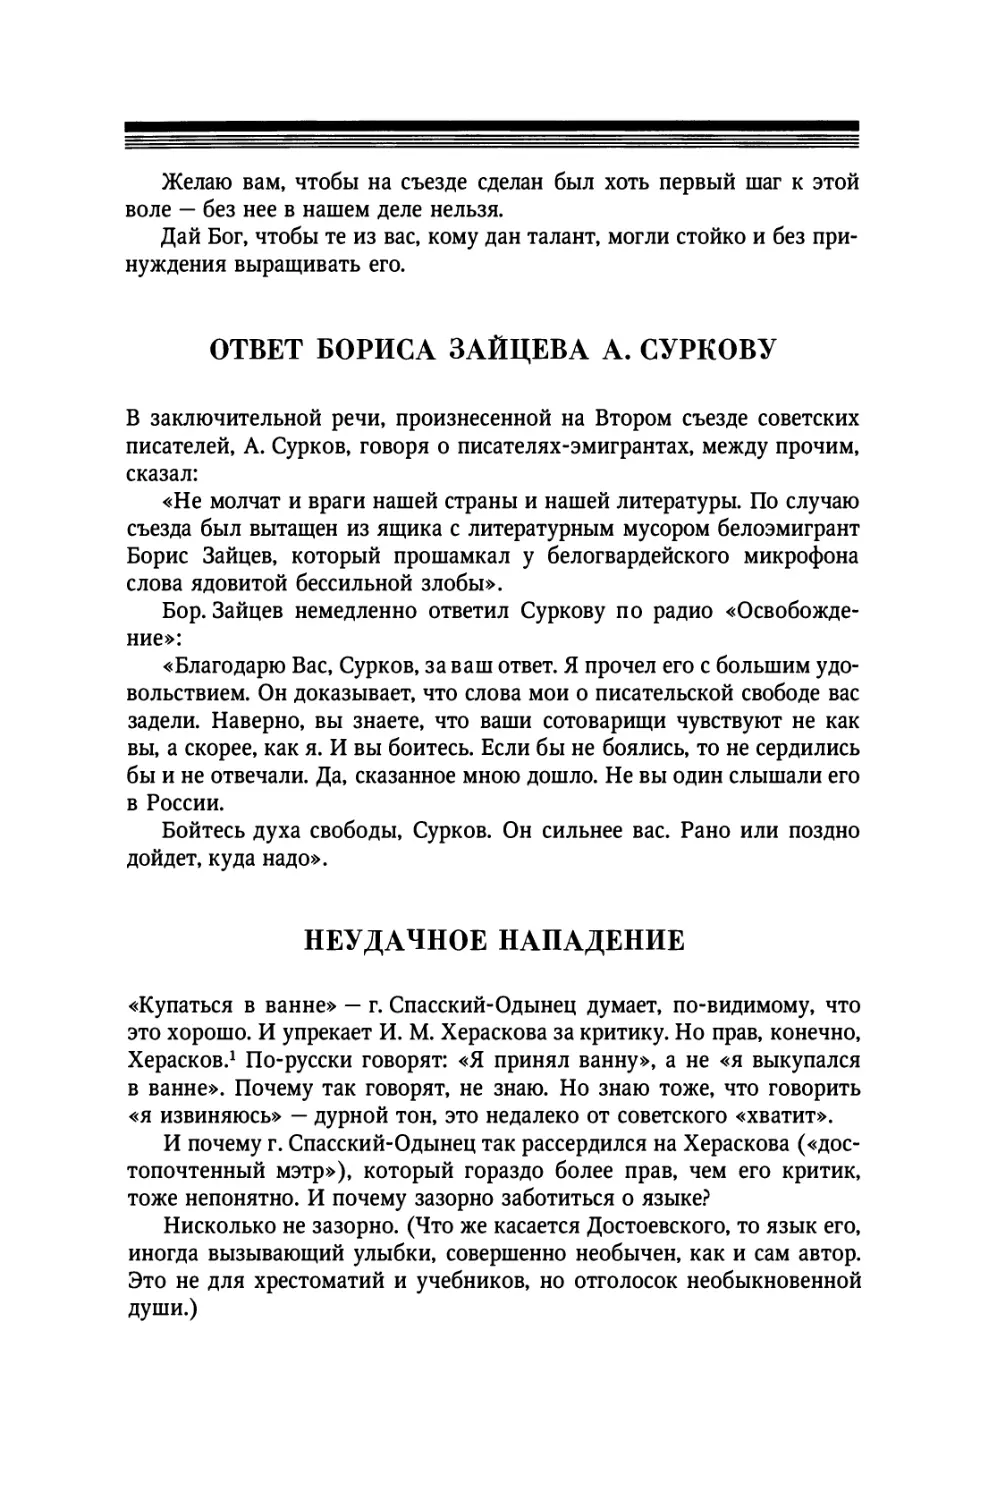 Ответ Бориса Зайцева А. Суркову
Неудачное нападение